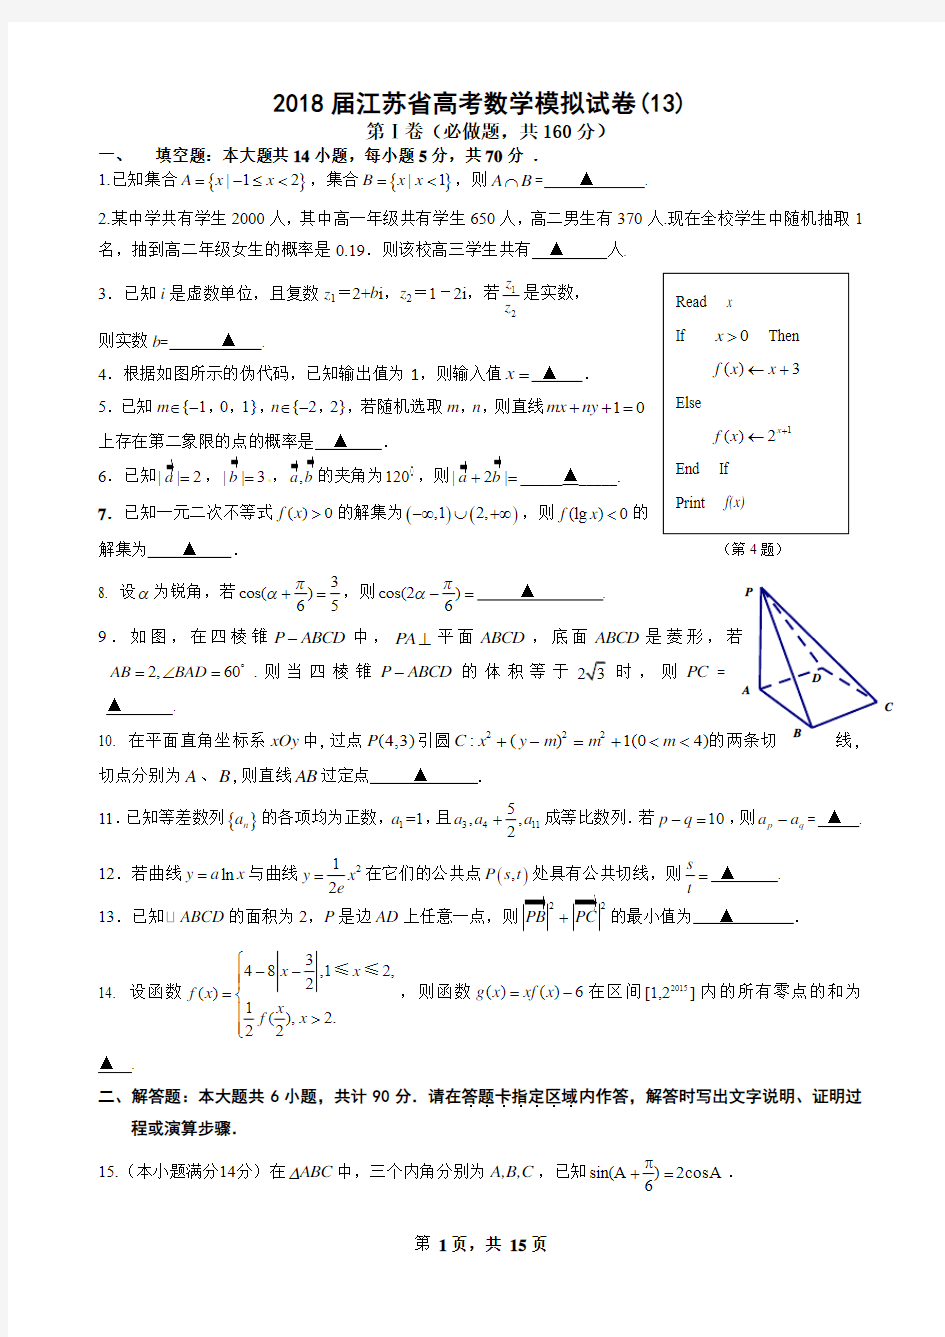 2018届江苏省高考数学模拟试卷(13)(含附加及详解)